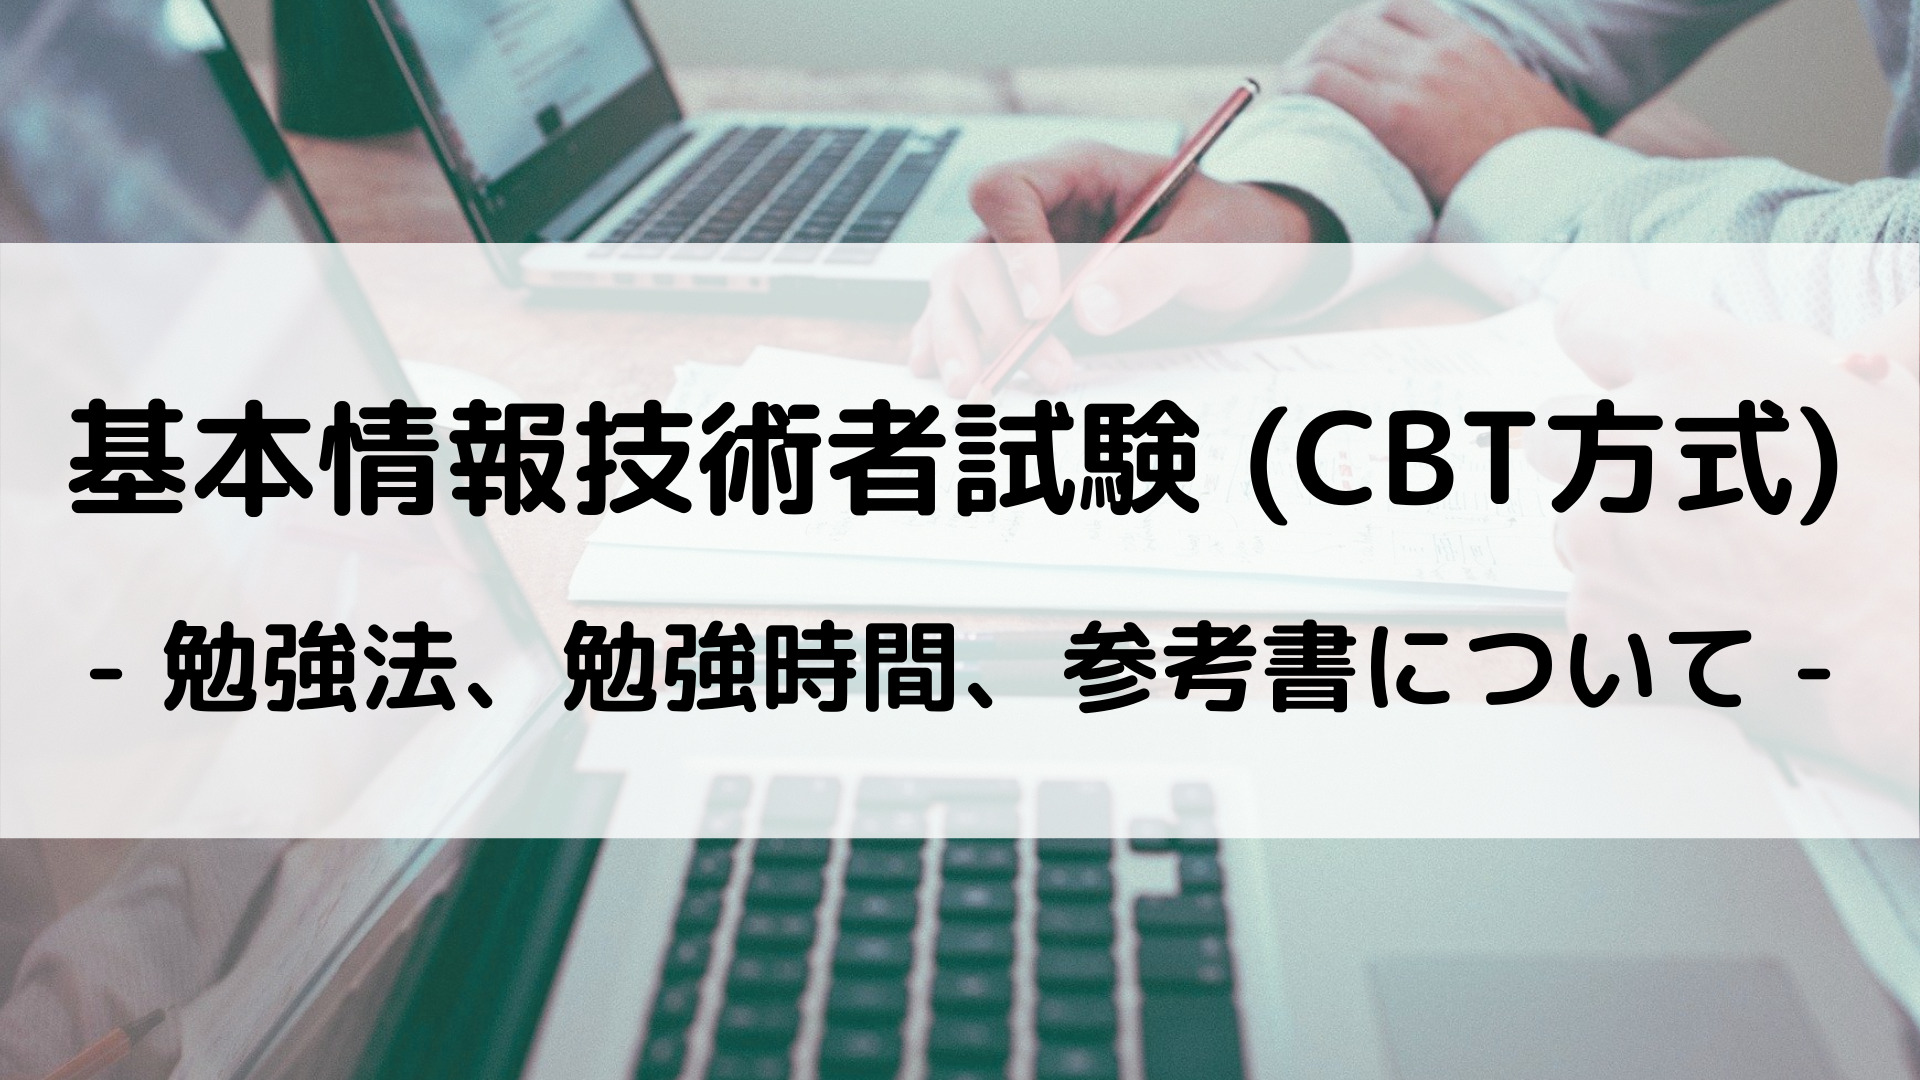 基本情報技術者試験 (CBT方式) -タイトル